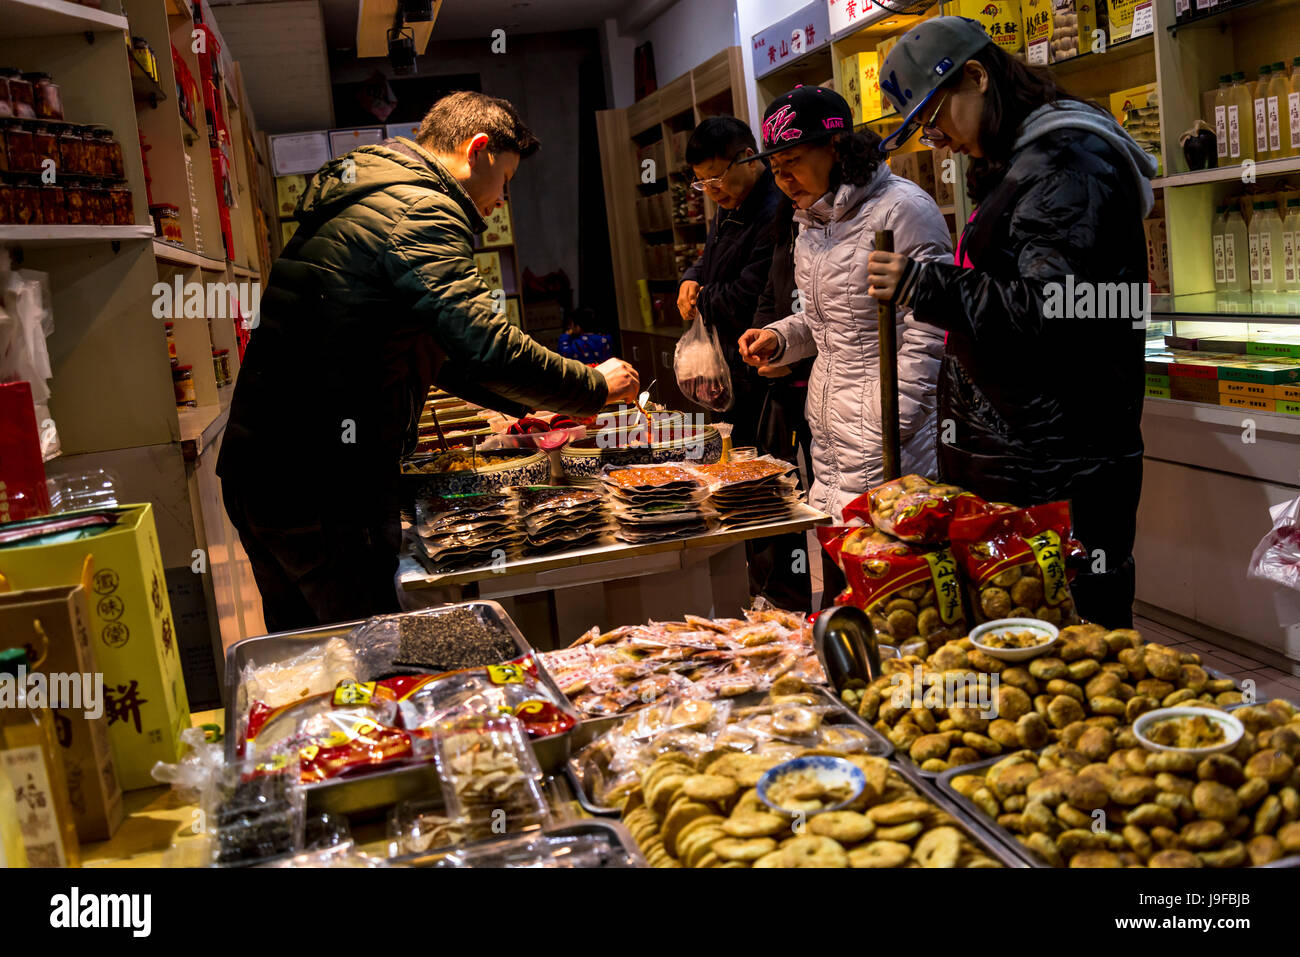 Laden mit regionalen Produkten wie grüner Tee Kekse, Tunxi alte Strasse, traditionellen Kaufhäusern, Huangshan, Anhui Provinz, China Stockfoto